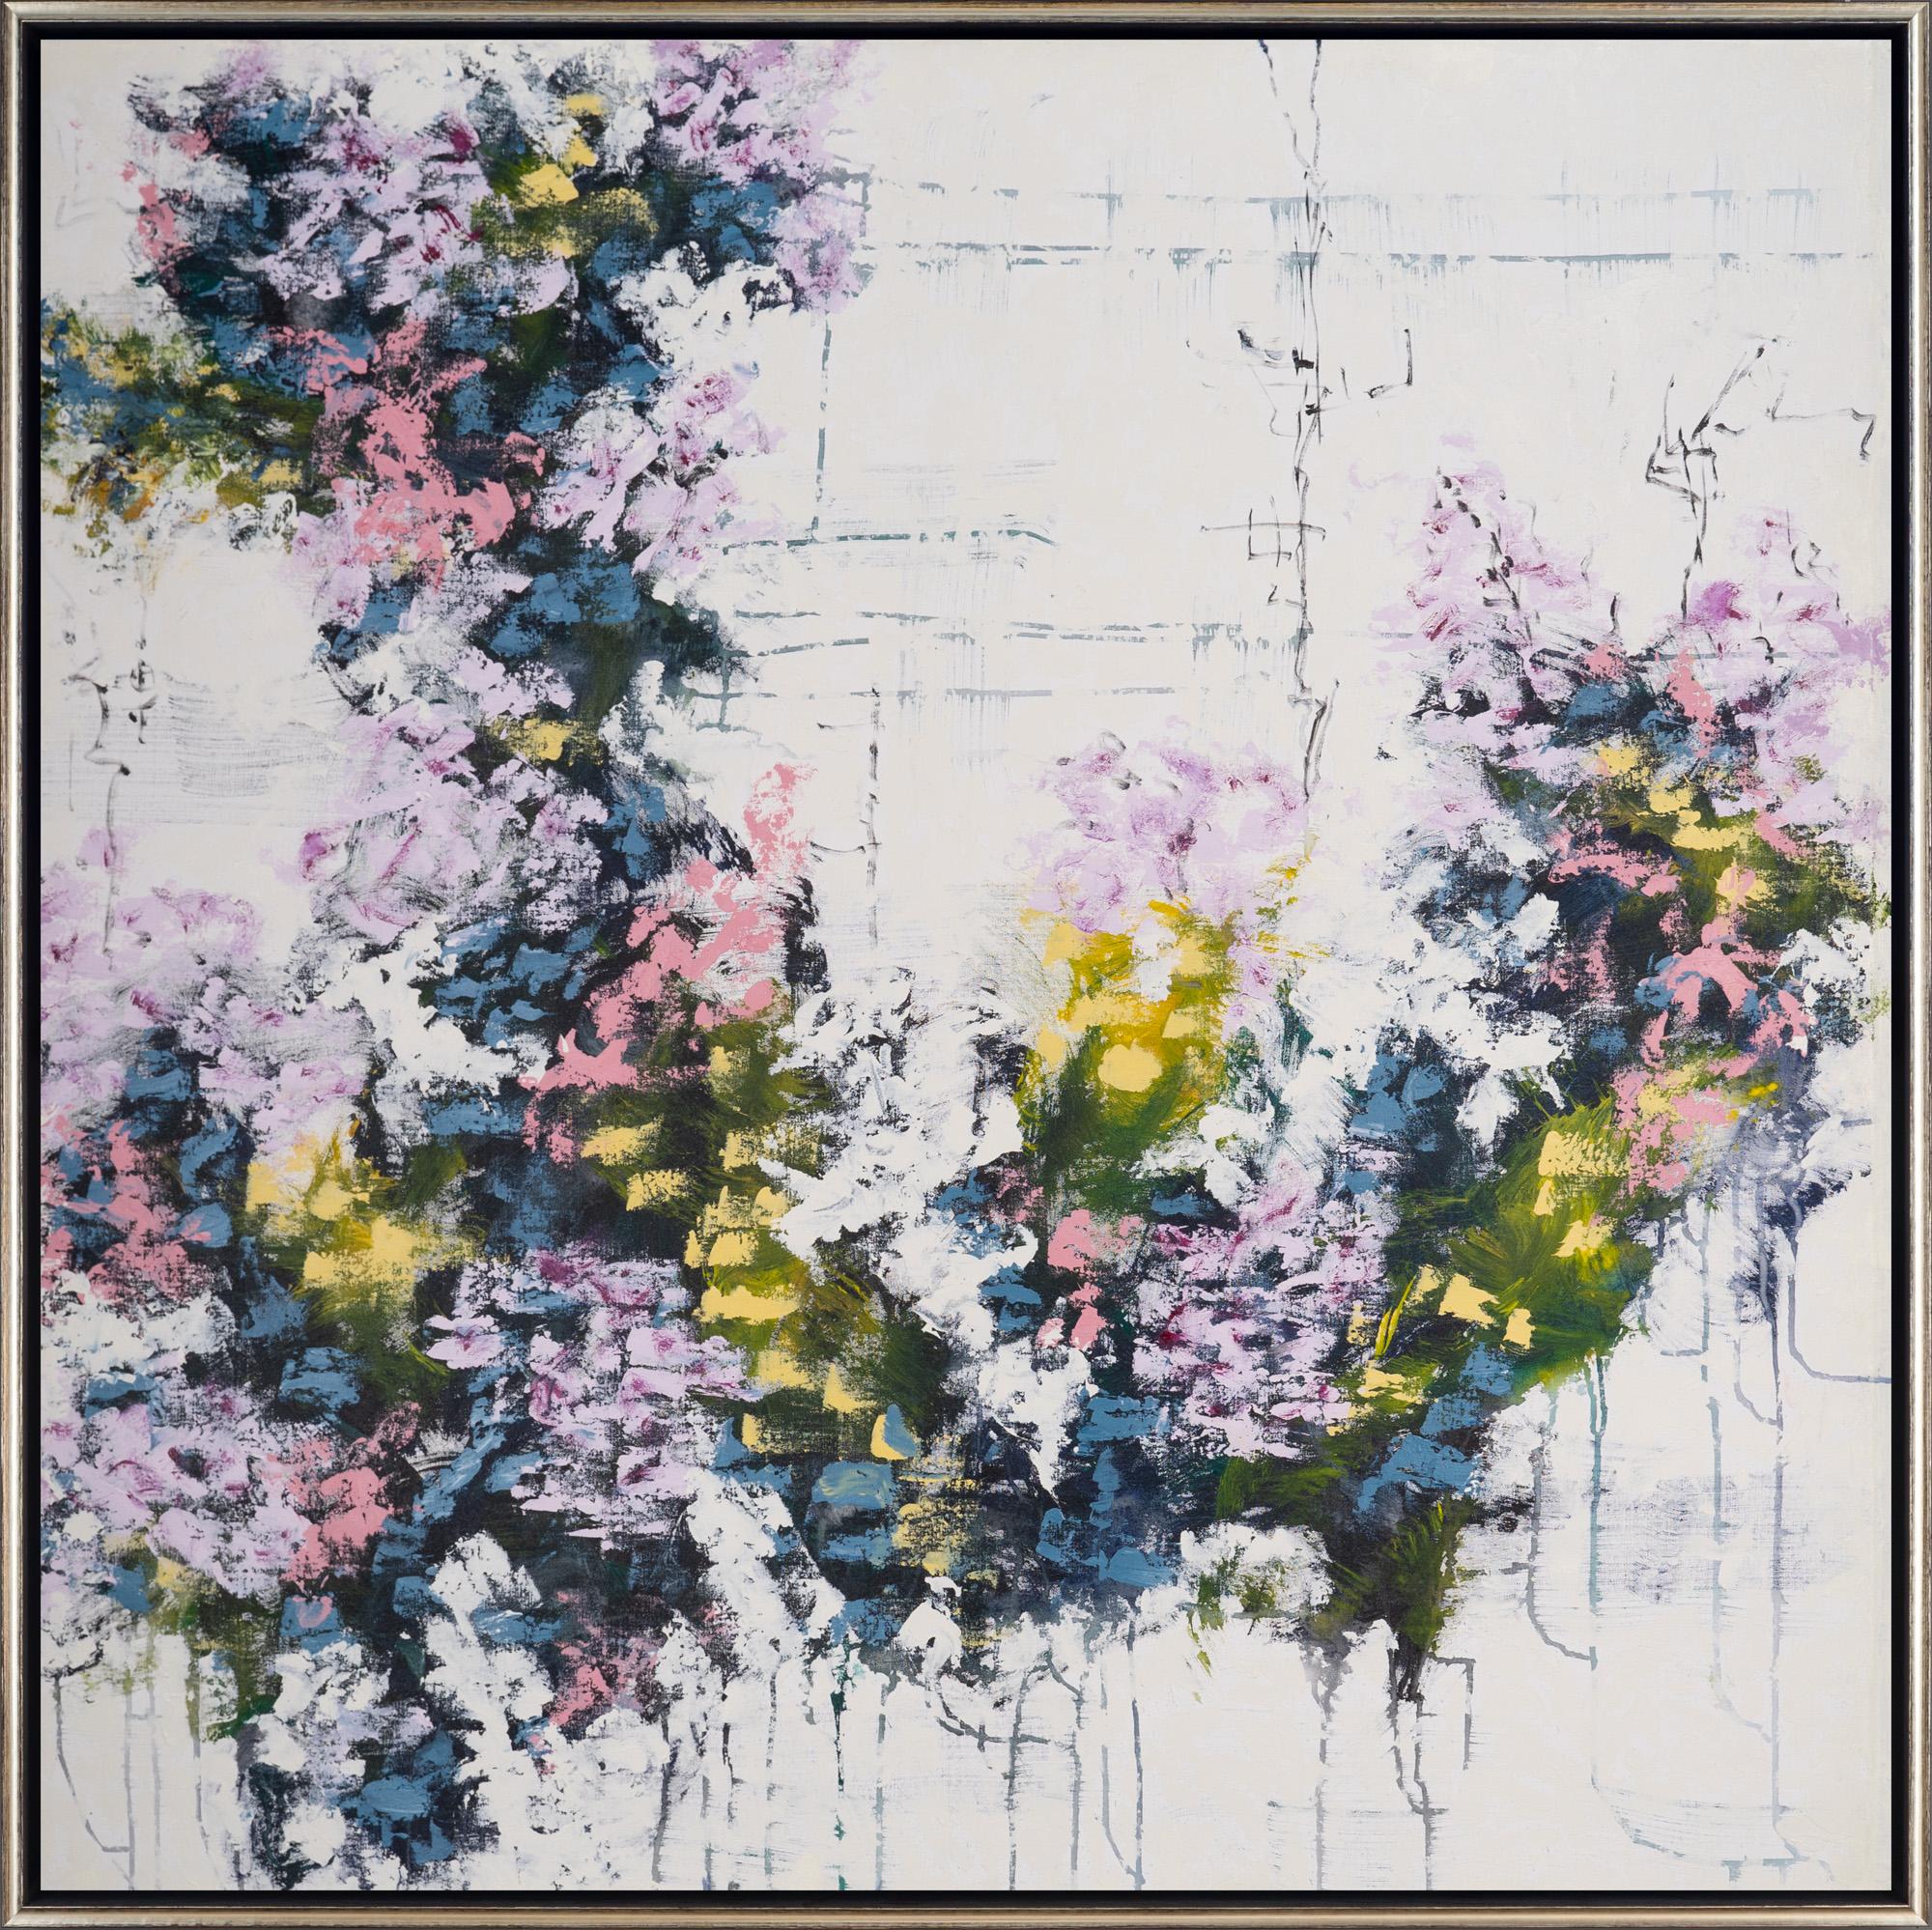 Still-Life Painting David Skillicorn - "Botanica 15-6" Peinture abstraite à motifs floraux mixtes sur toile encadrée